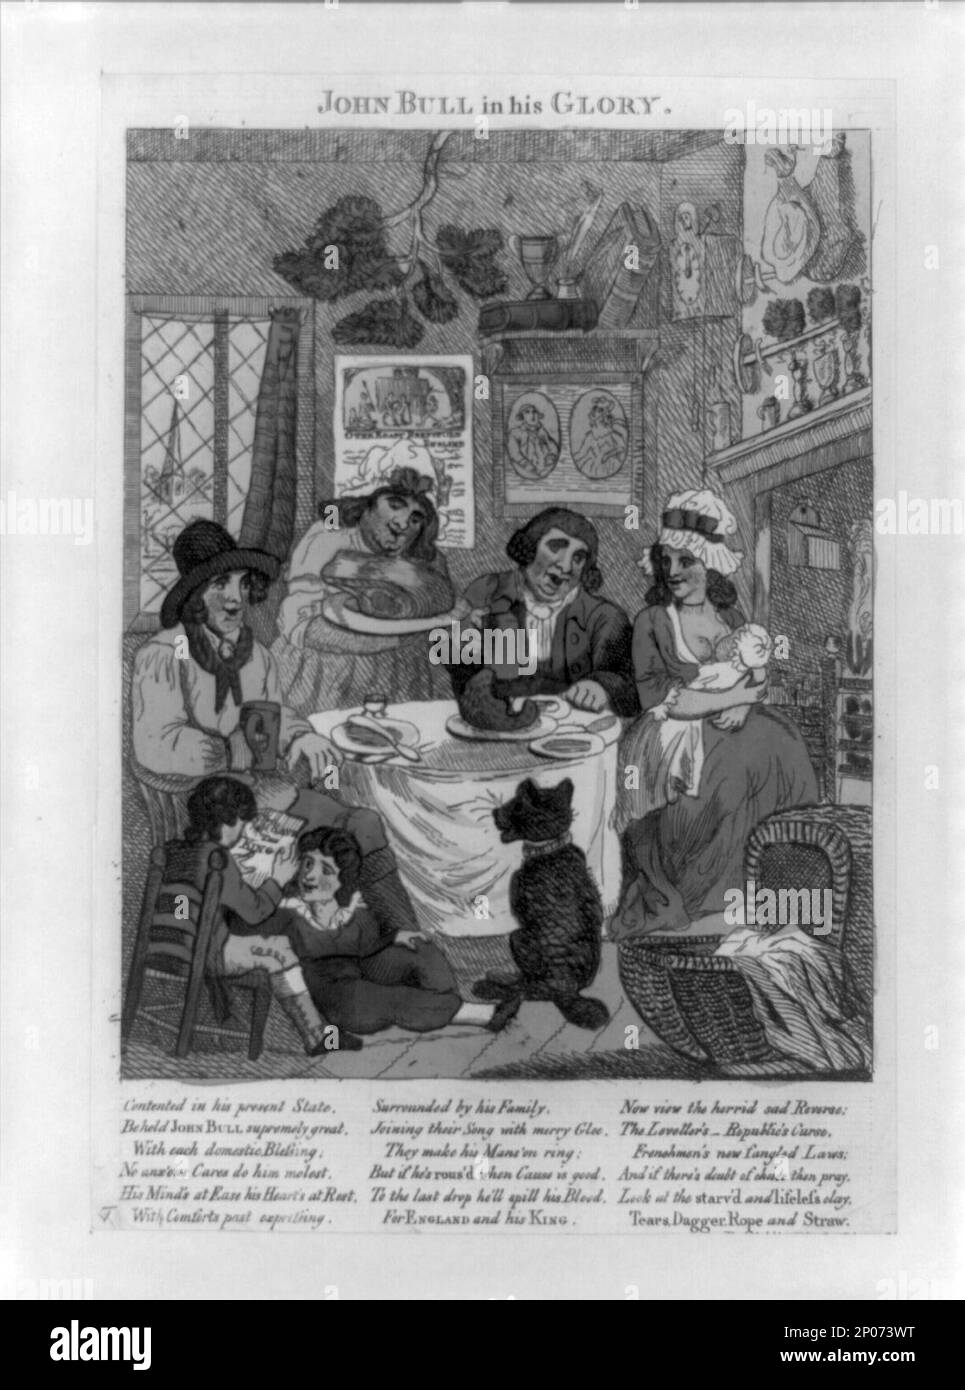 Giovanni Bull nella sua gloria. Collezione British Cartoon Prints . John Bull (carattere simbolico),1700-1800. , Vita domestica,Inghilterra,1700-1800. Foto Stock